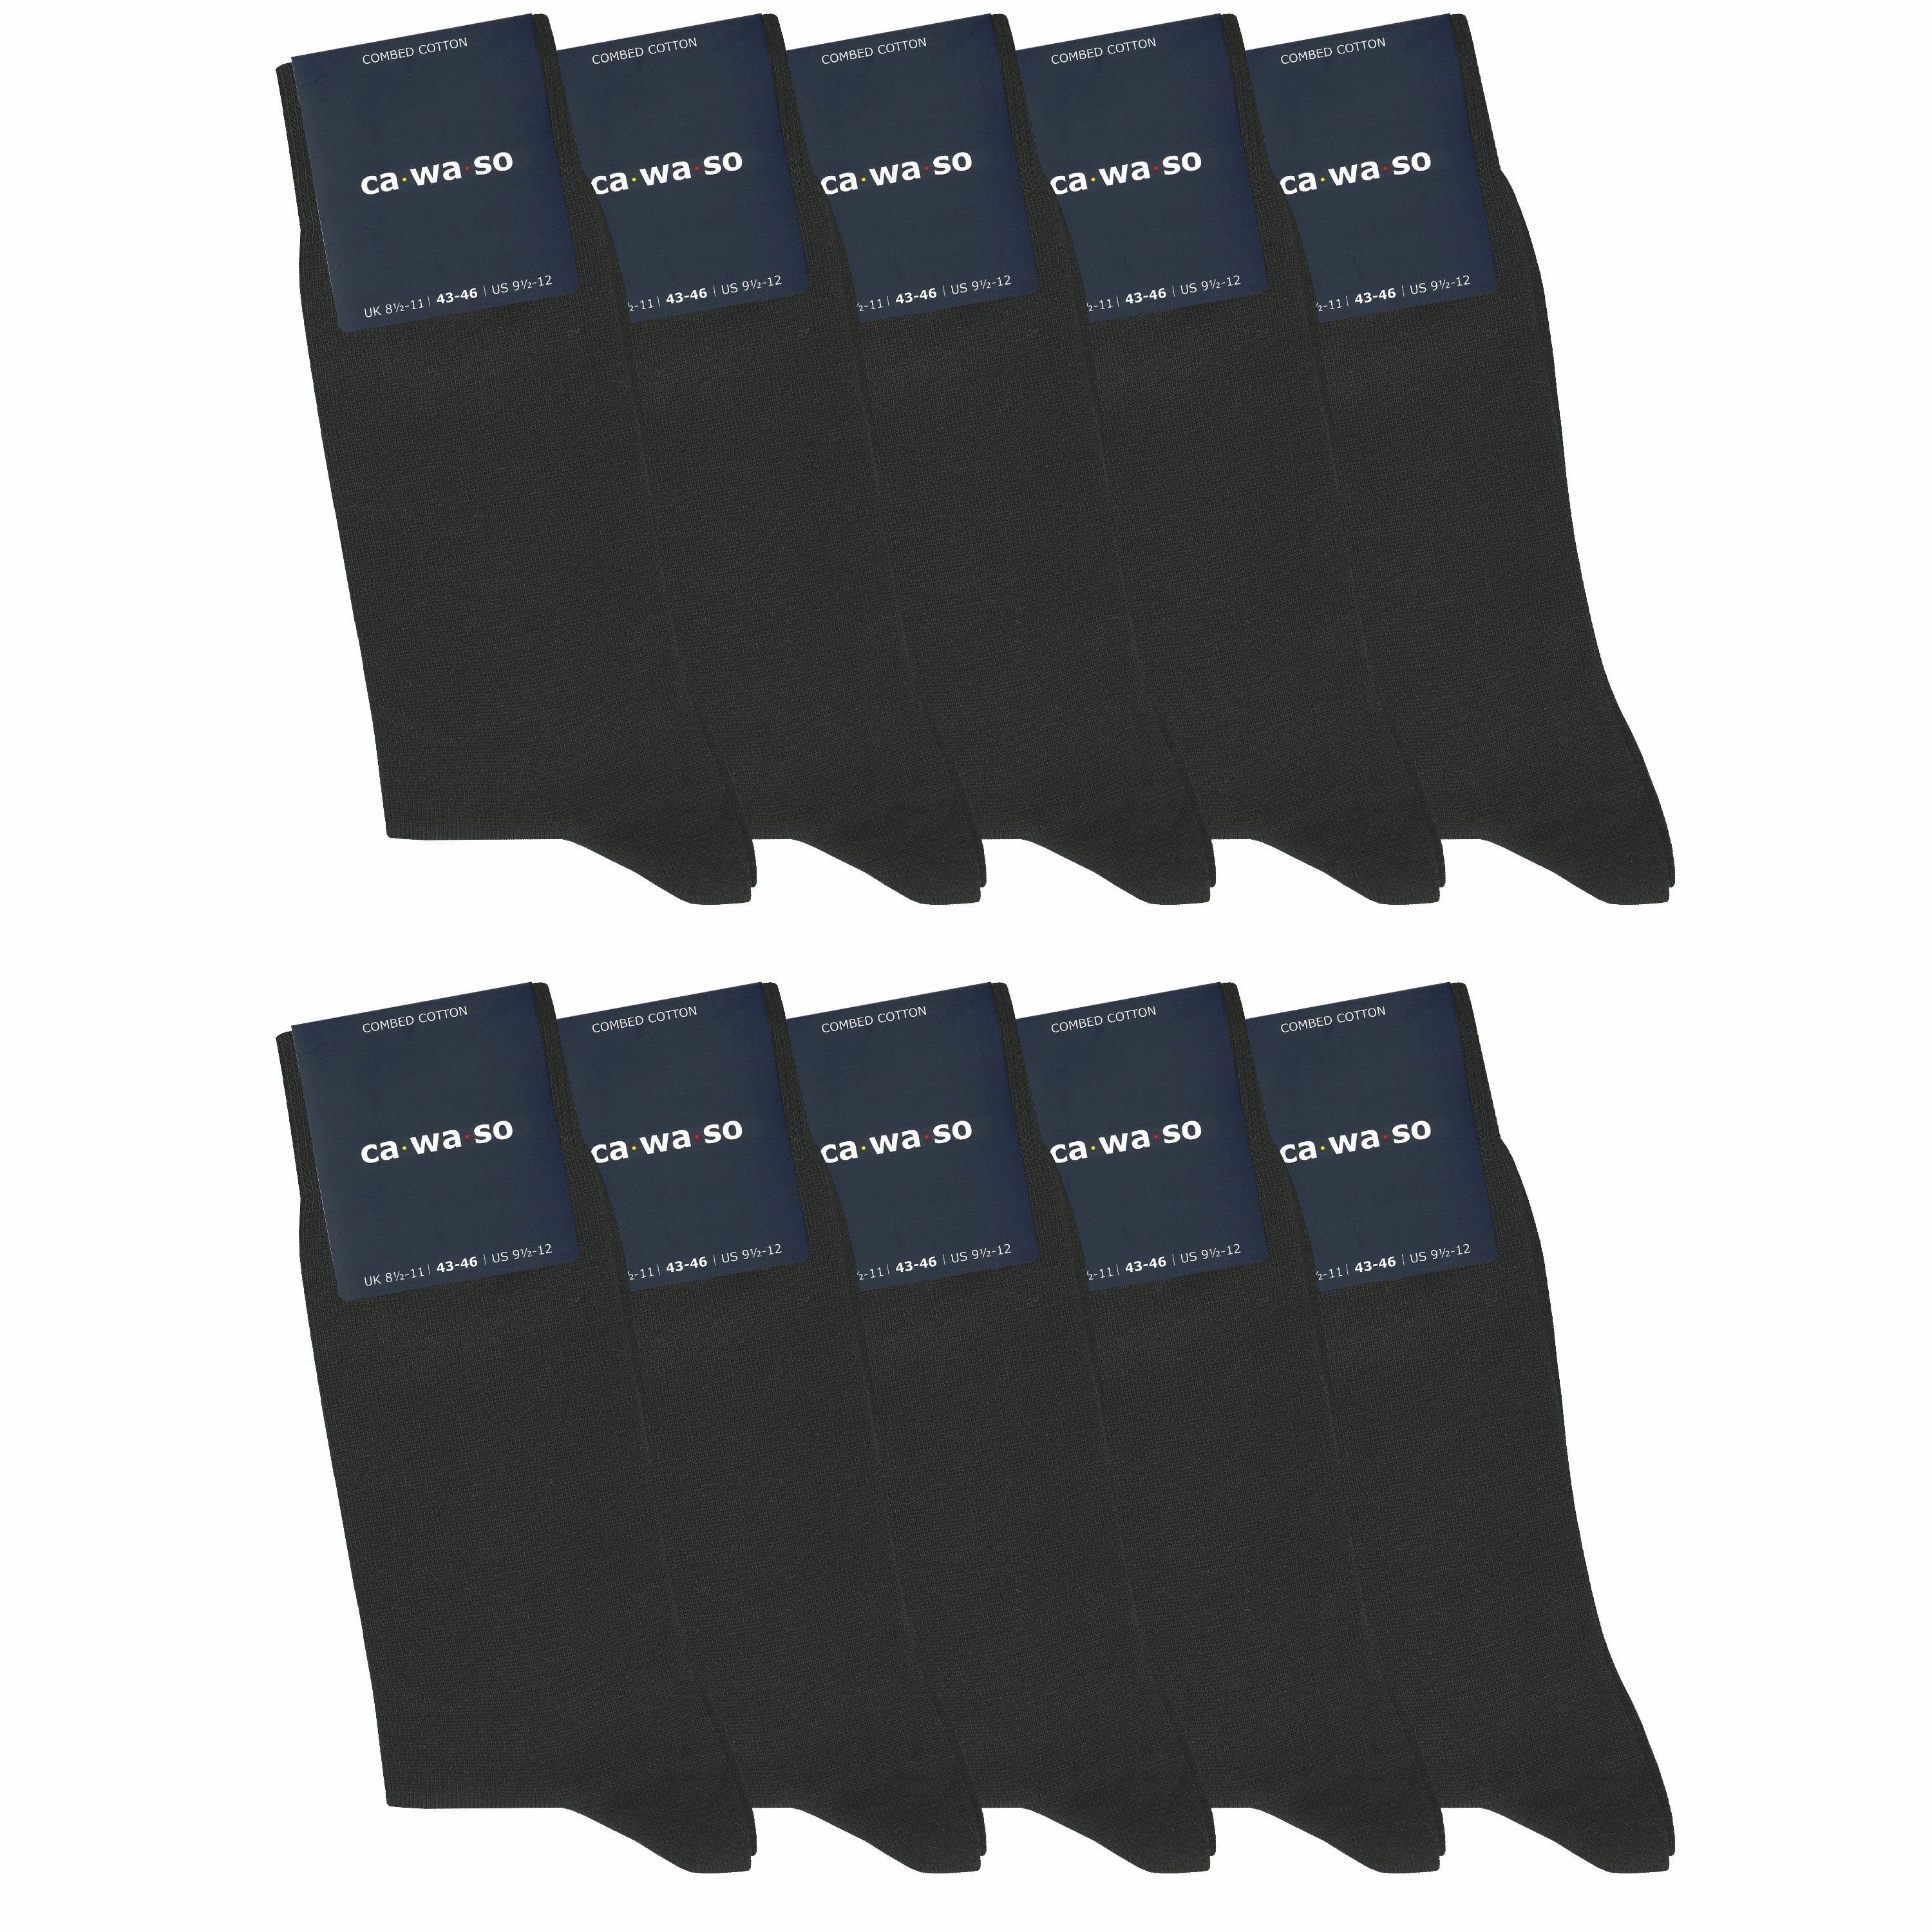 ca·wa·so Socken für Damen & Herren - bequem & weich - aus doppelt gekämmter Baumwolle (10 Paar) Socken in schwarz, bunt, grau, blau und weiteren Farben